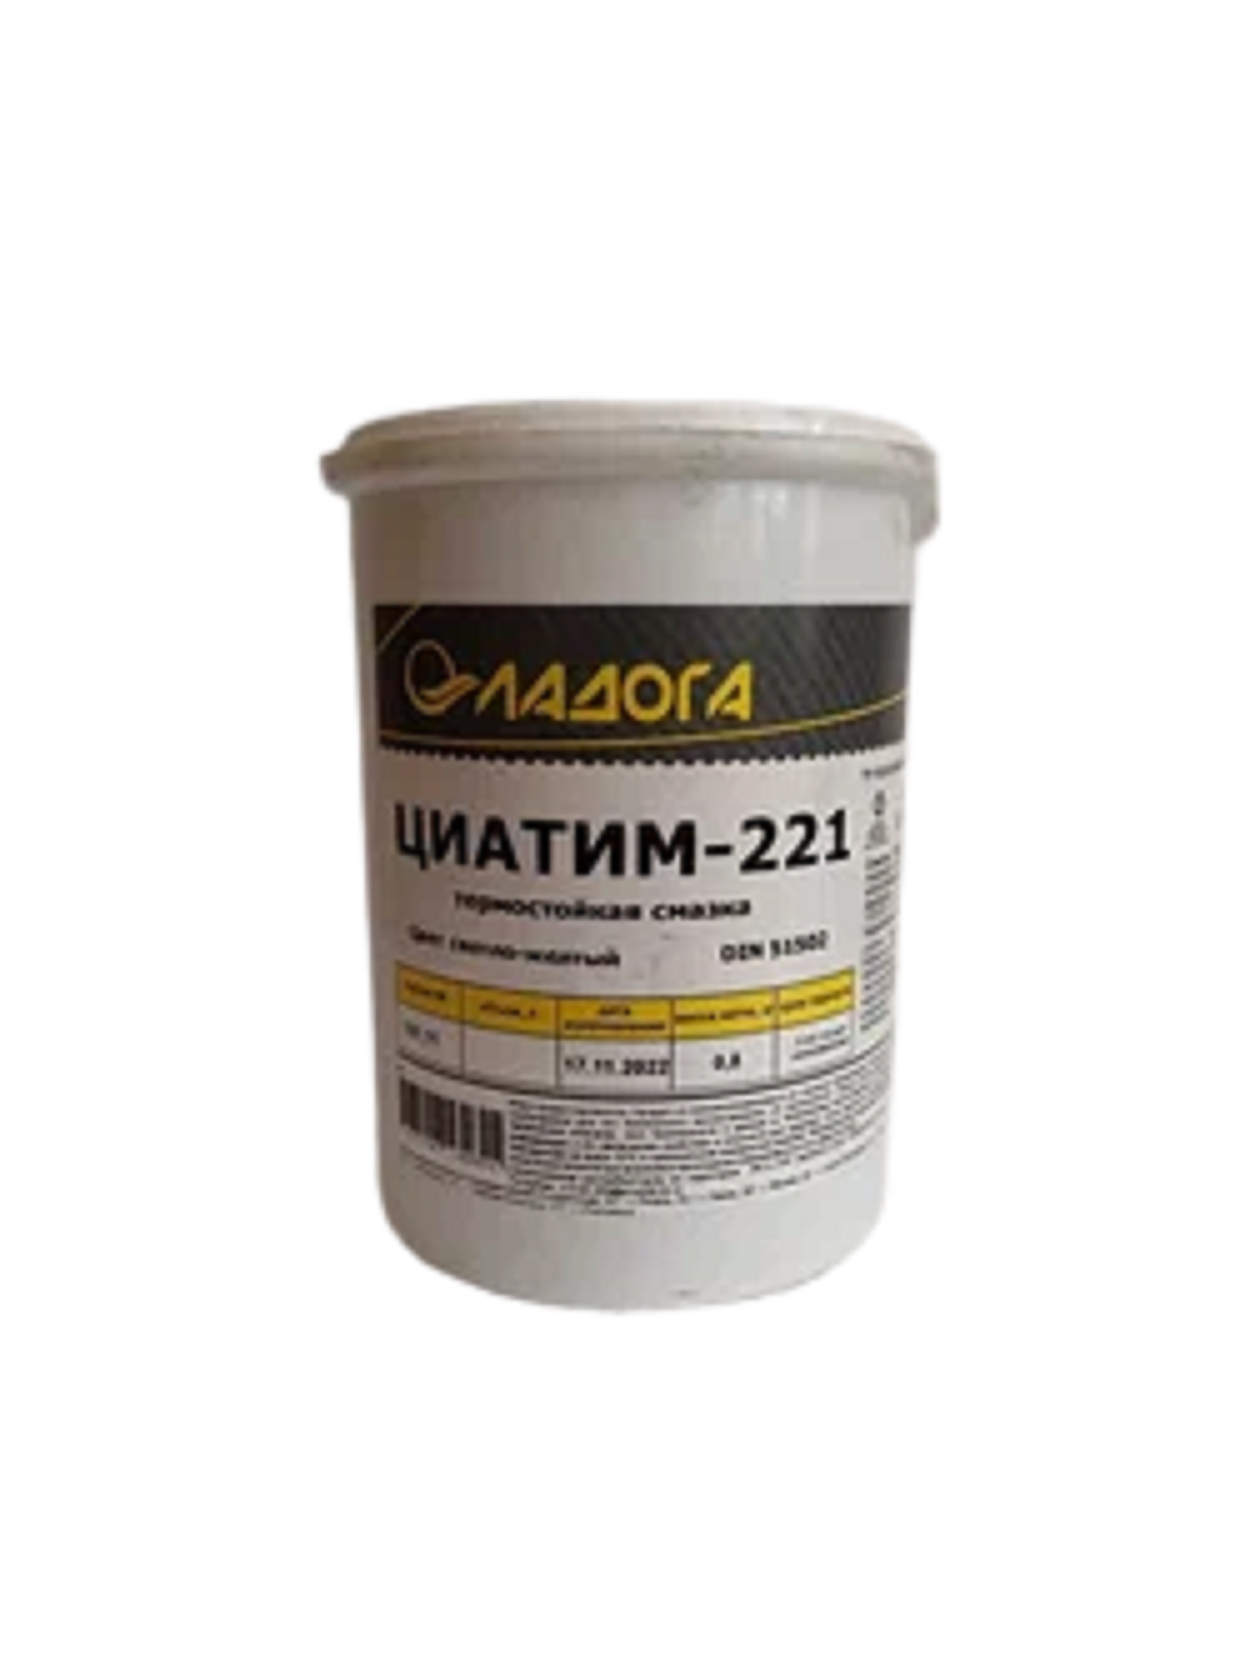 Смазка Ладога Циатим-221 0,8 кг смазка для тросиков управления cupper